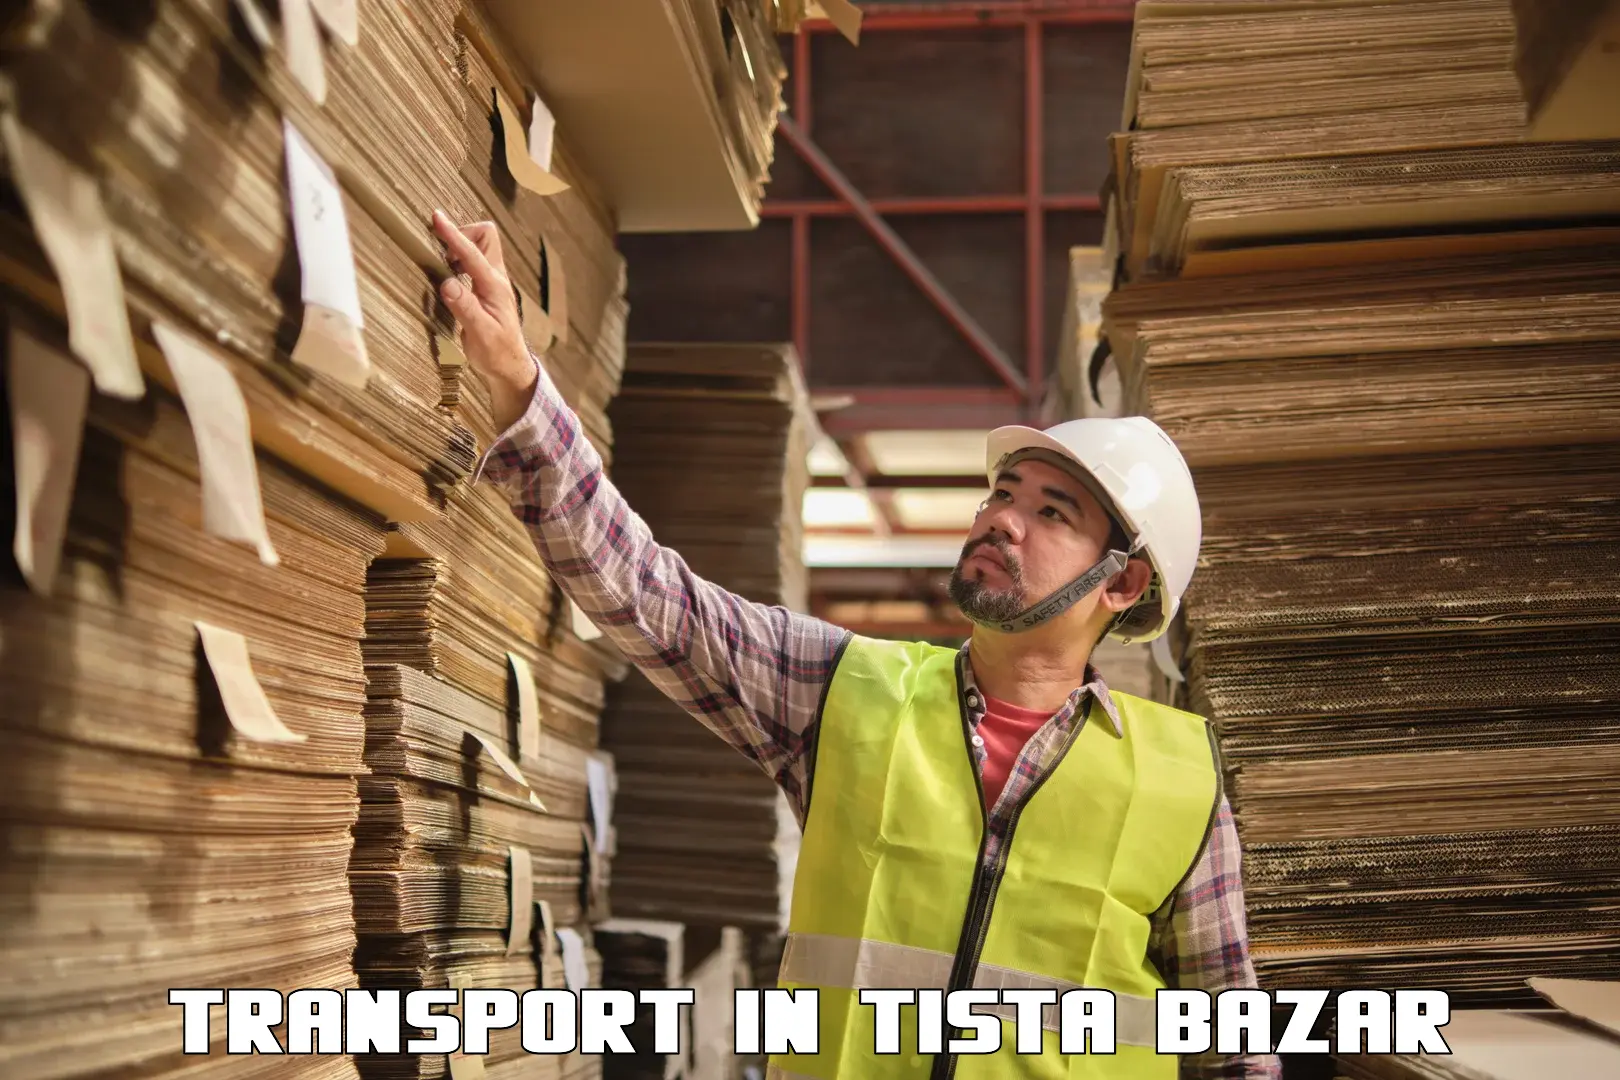 Cargo transport services in Tista Bazar